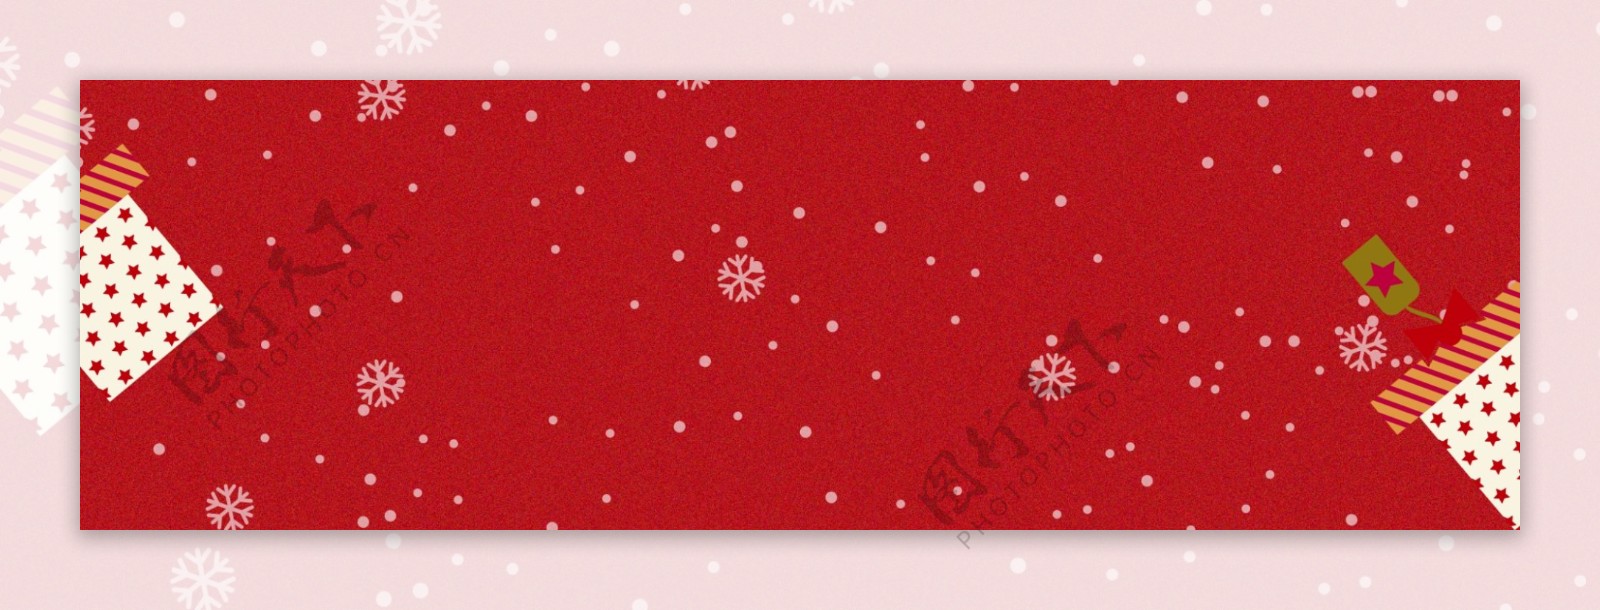 雪花圣诞节卡通促销banner背景